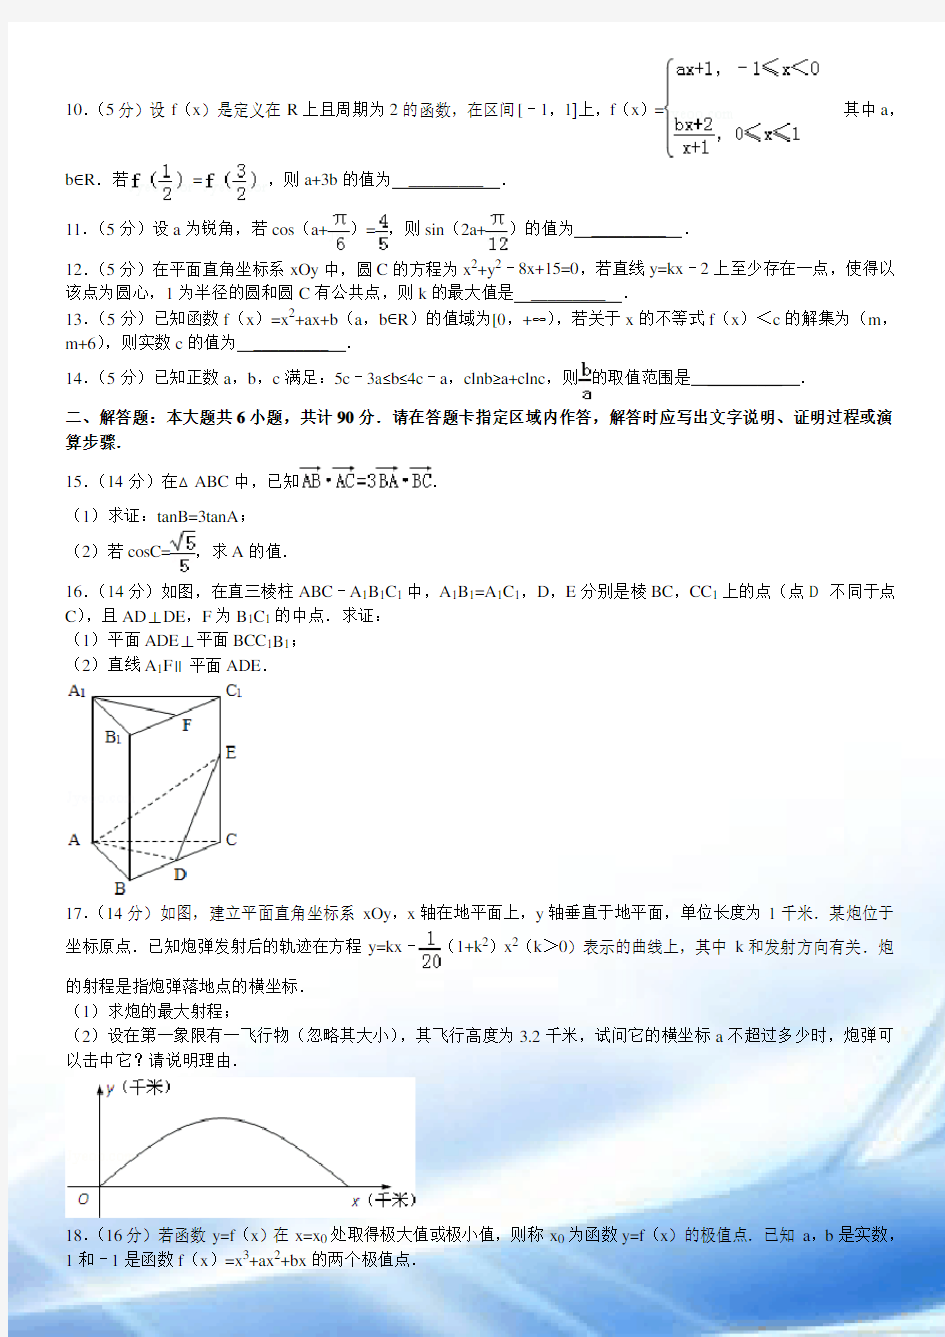 2012年江苏高考数学试卷含答案和解析